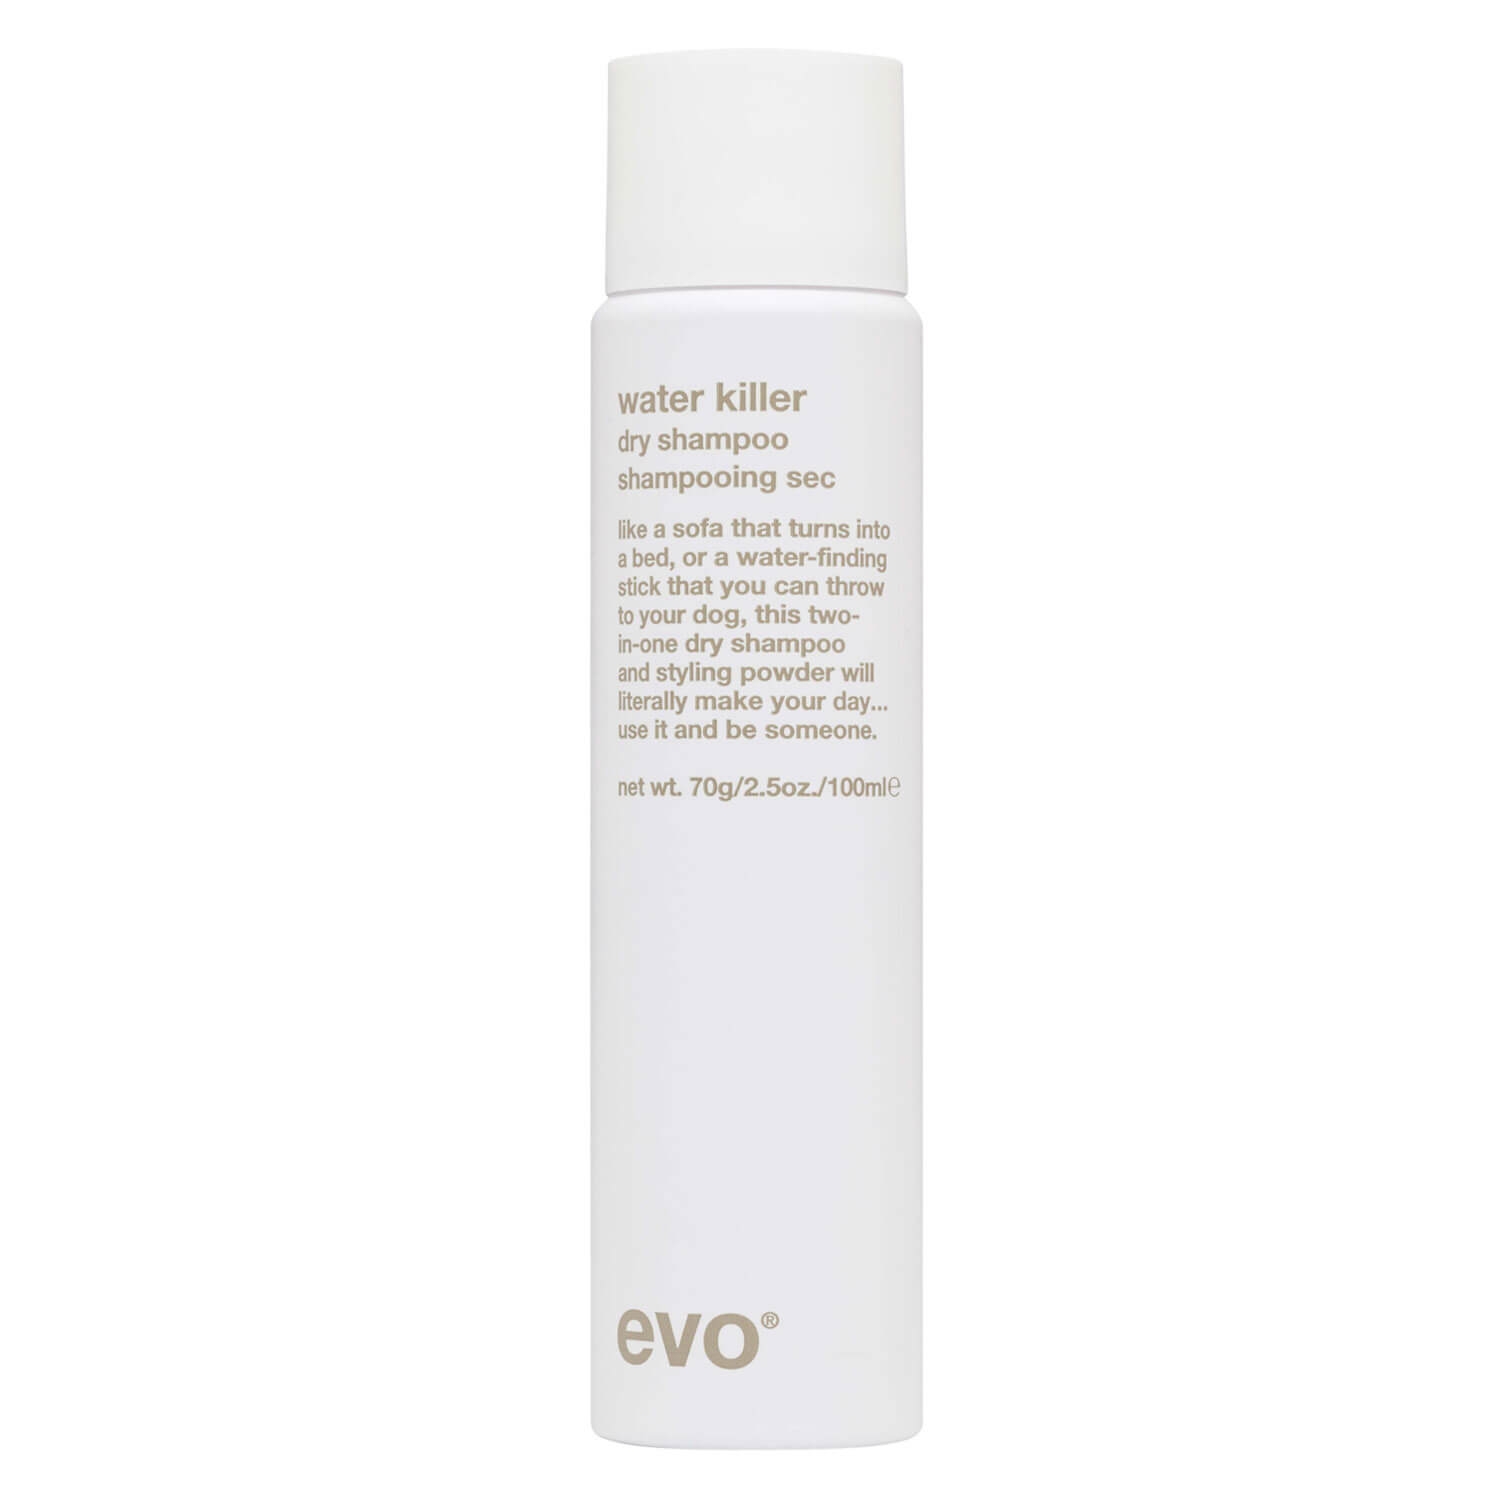 Produktbild von evo style - water killer dry shampoo